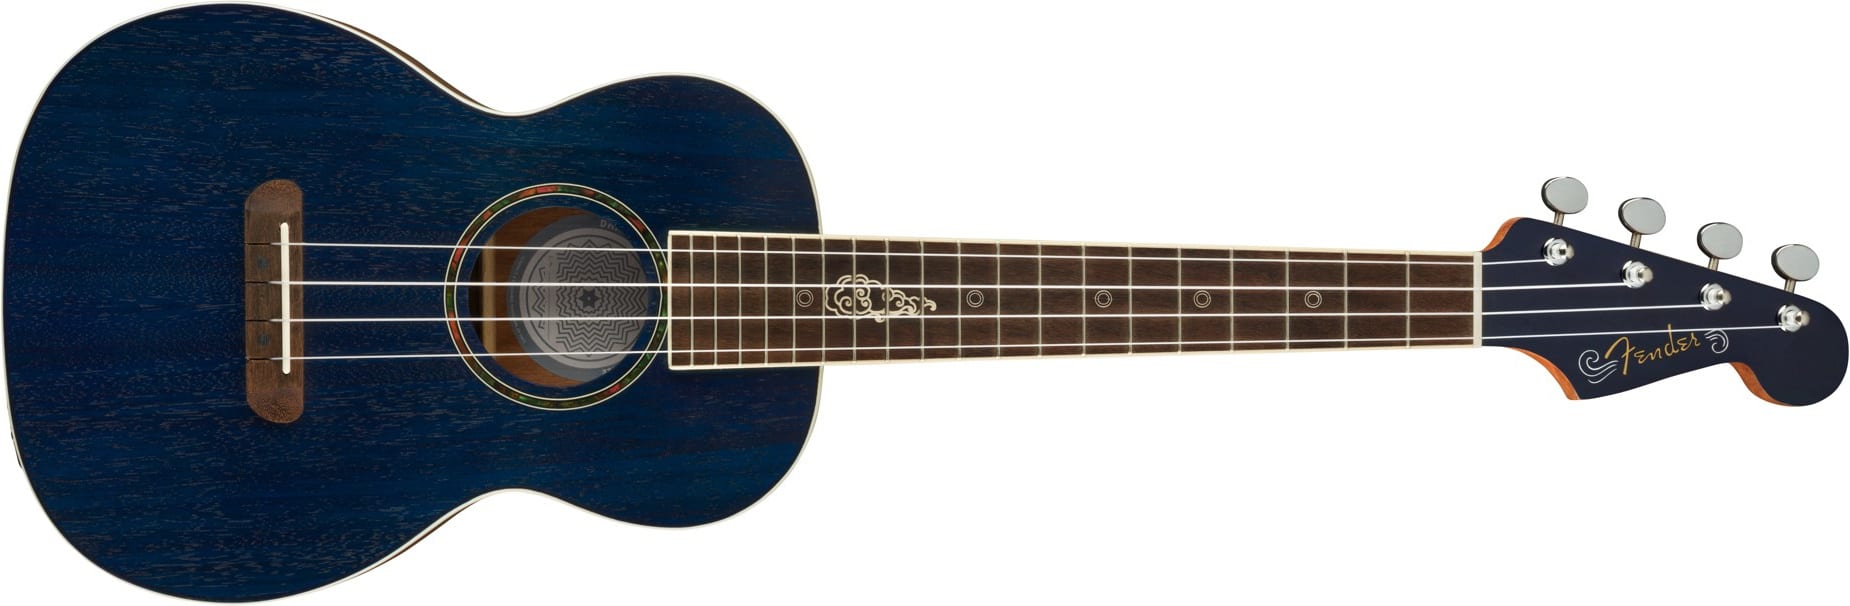 Fender Dhani Harrison ukulele